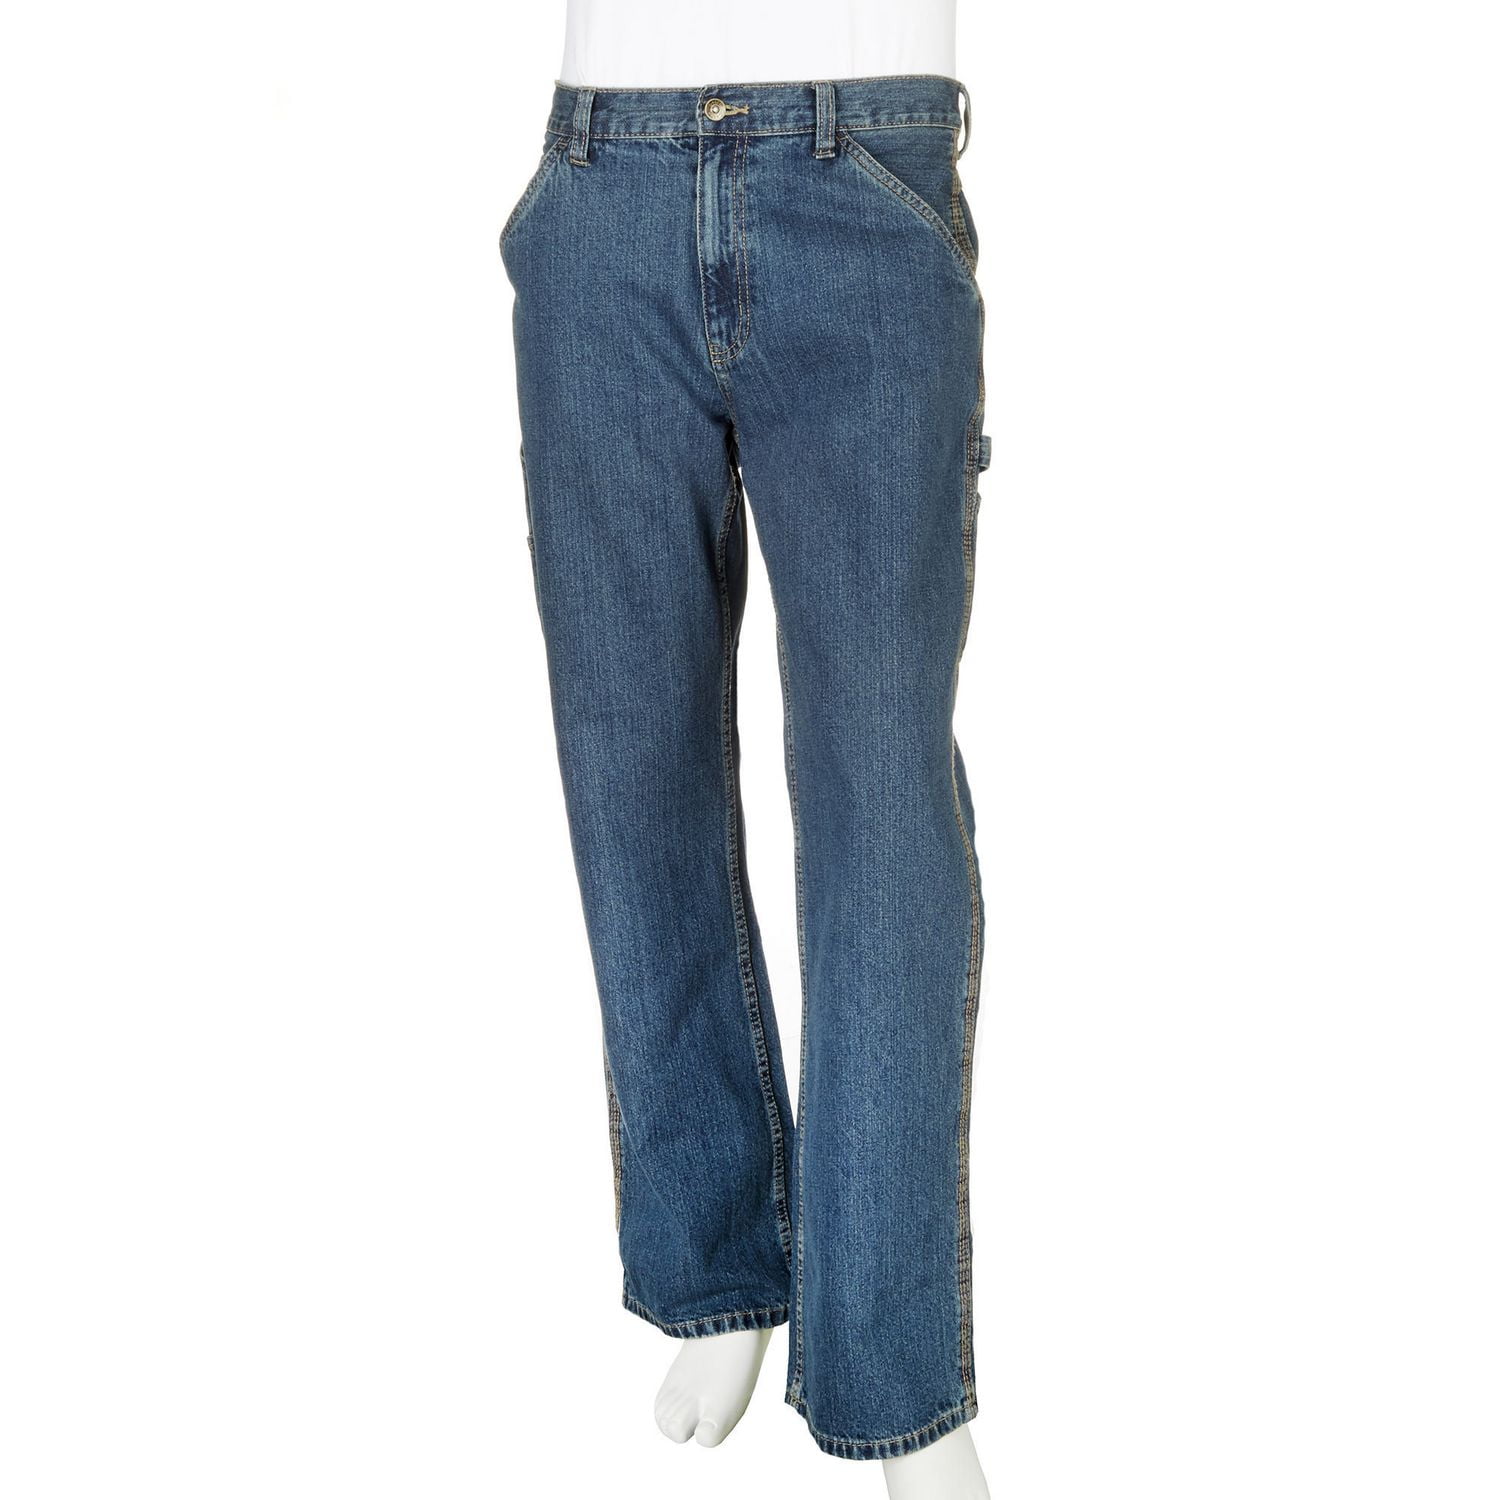 George Men's Carpenter Jeans 